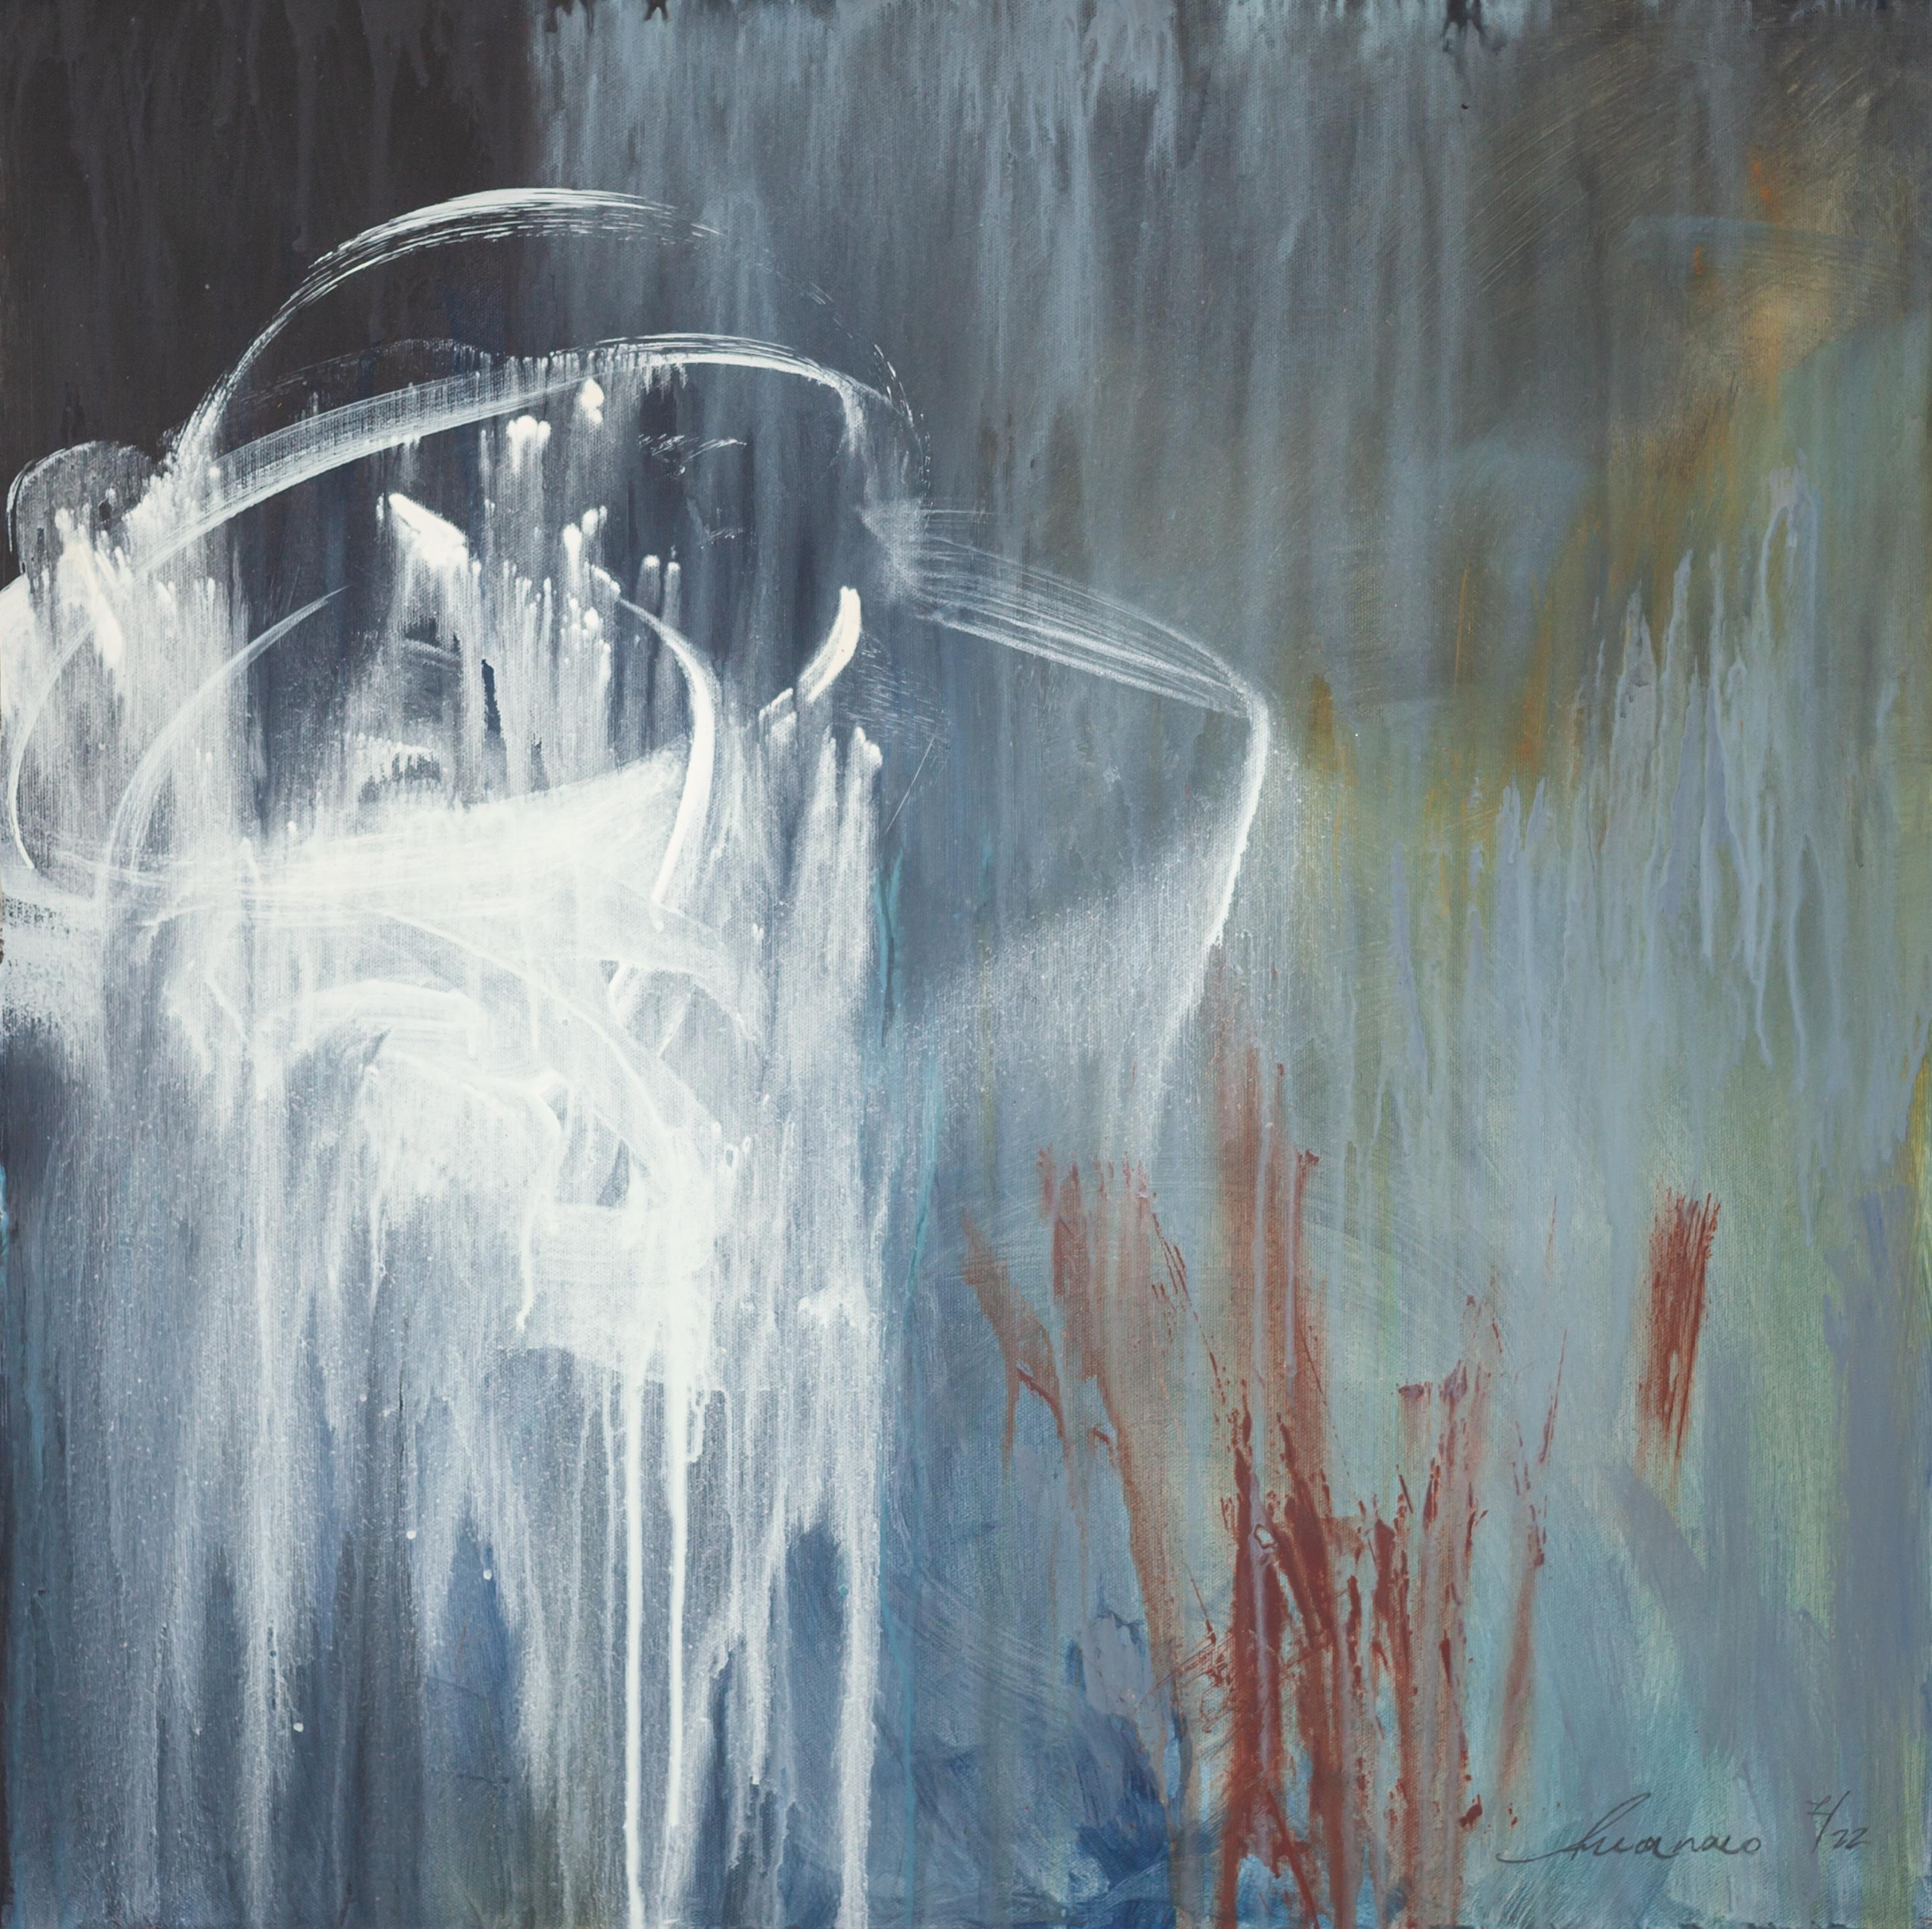 Ana Carolina Mönnaco Abstract Painting - Stormy Weather I